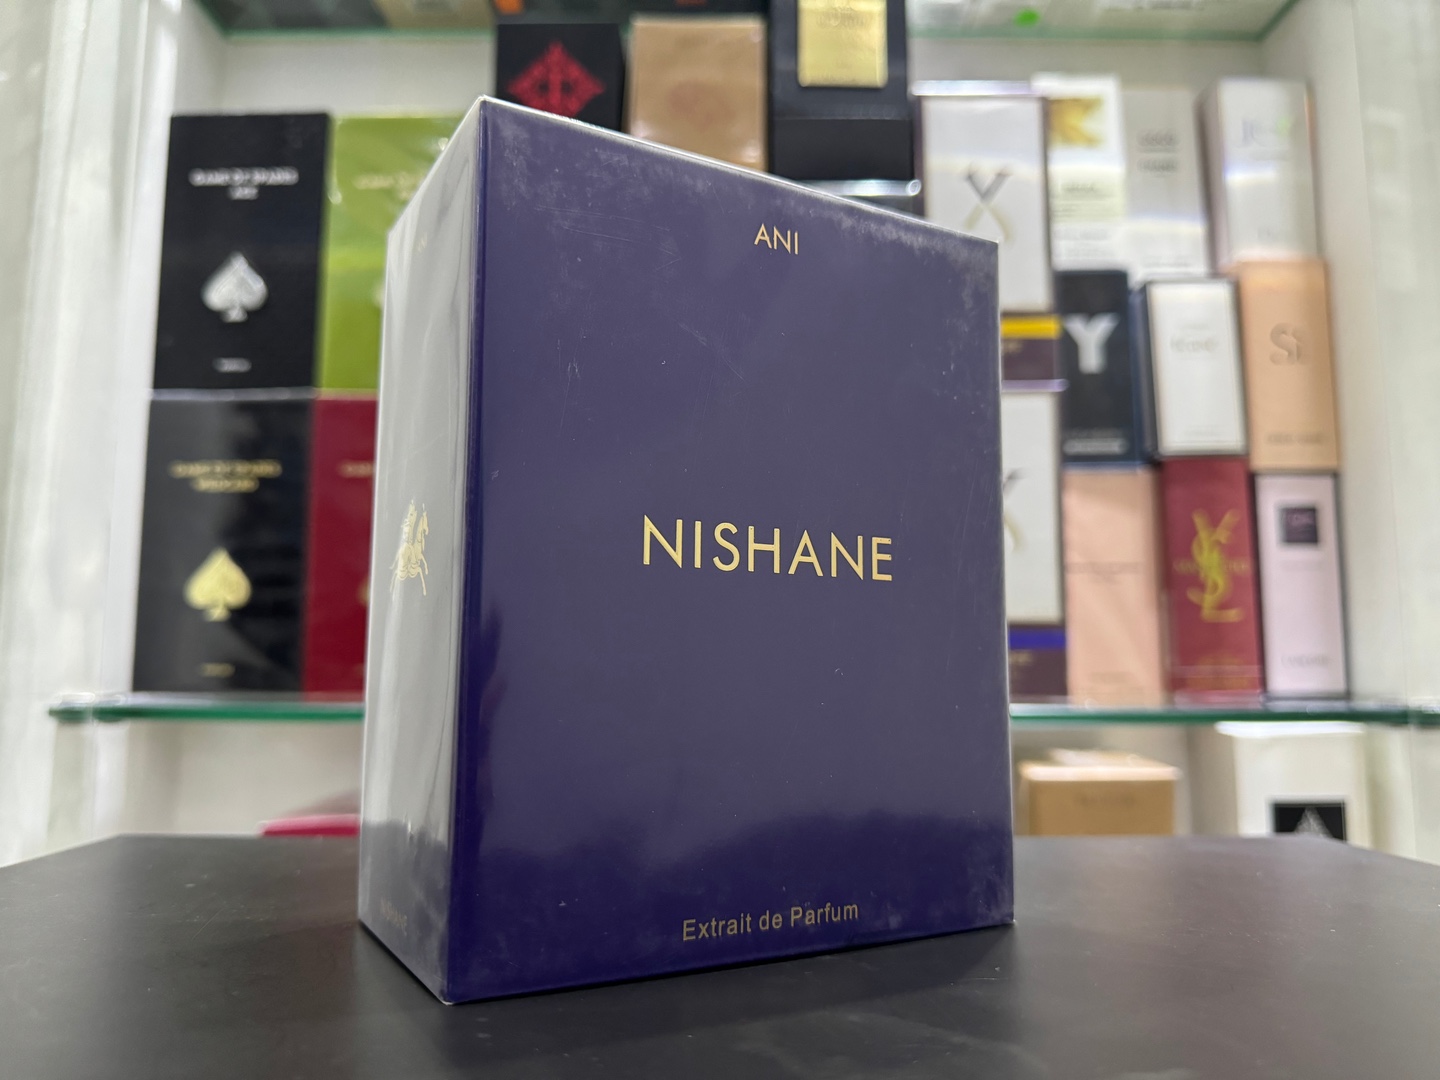 joyas, relojes y accesorios - Perfume NISHANE ANI 100ML Nuevos, 100% Auténticos RD$ 11,500 NEG /SOMOS TIENDA 0